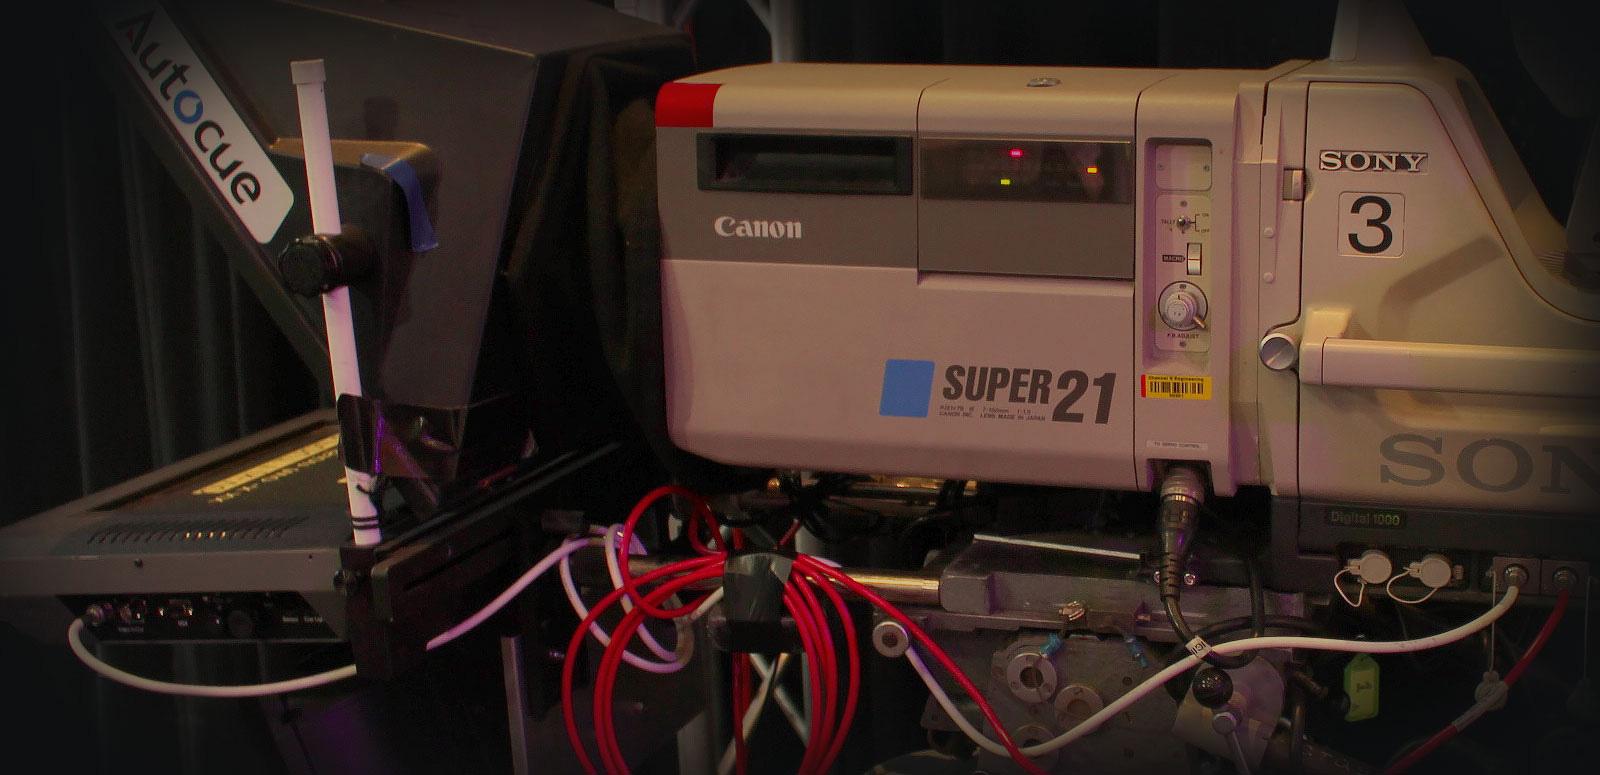 Close up of studio camera equipment, showing a Super 21 camera and autocue machine.